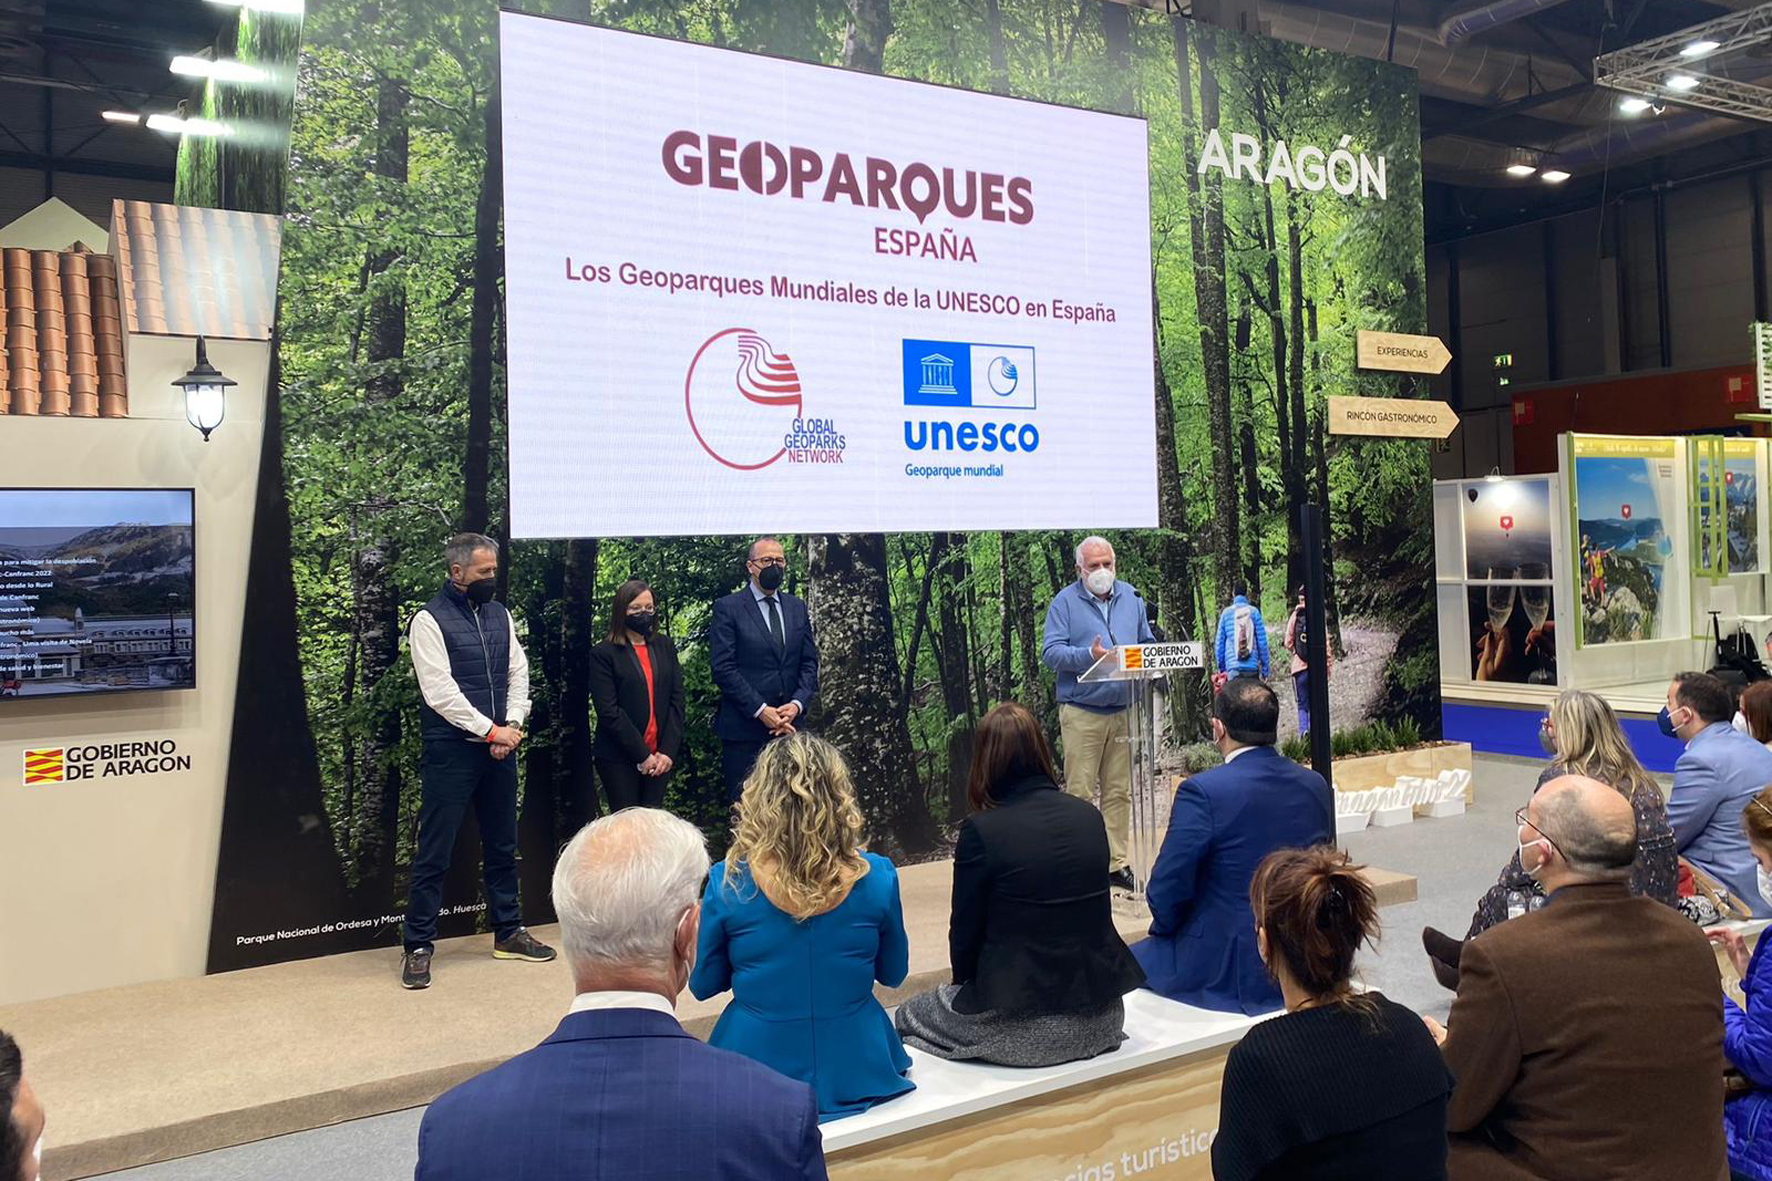 Geoparque El Hierro asiste en FITUR a la presentación de la web corporativa de Geoparques de España de la UNESCO